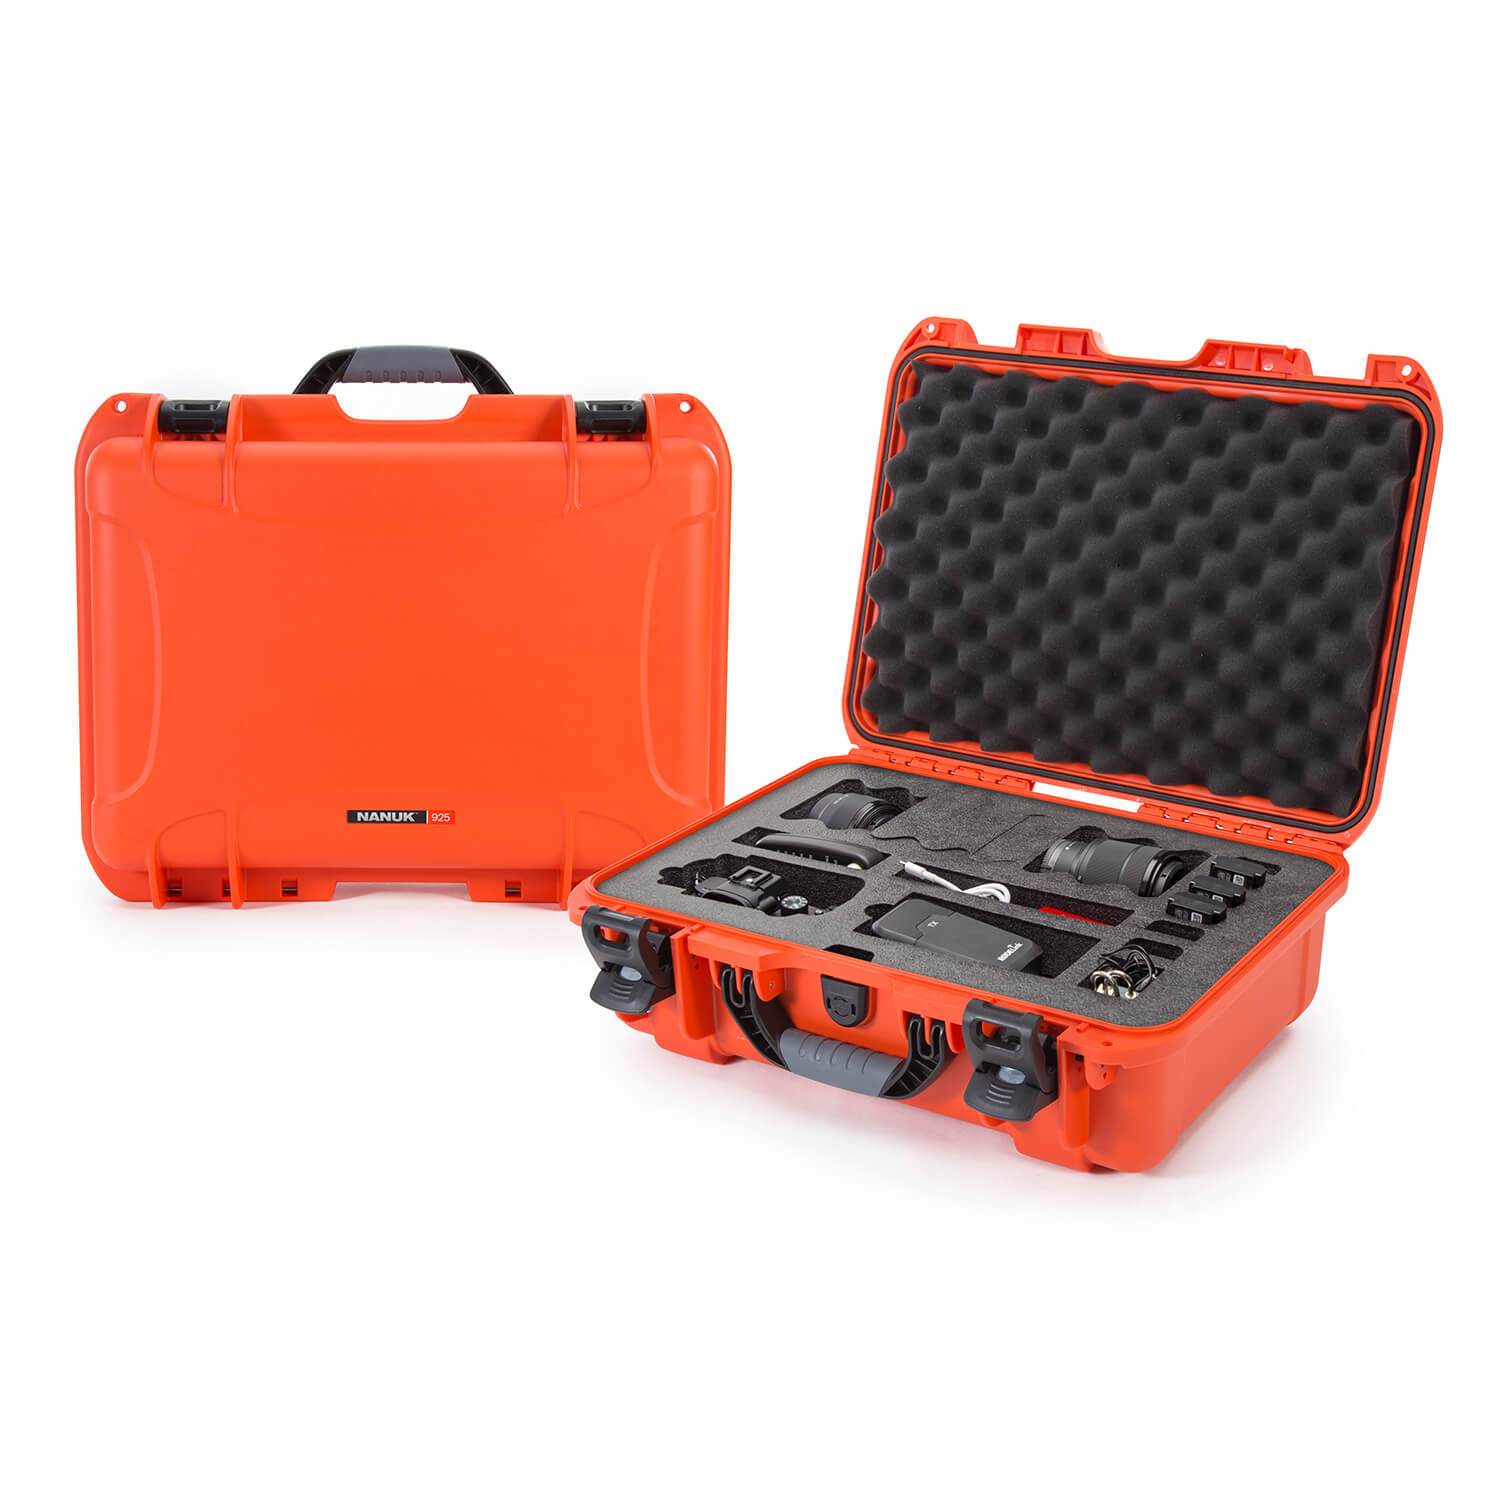 Nanuk 925-EDSLR3 Waterproof Carry-on Hard Case with Foam Insert for Canon, Nikon - 1 DSLR Body and Lens/Lenses - Orange